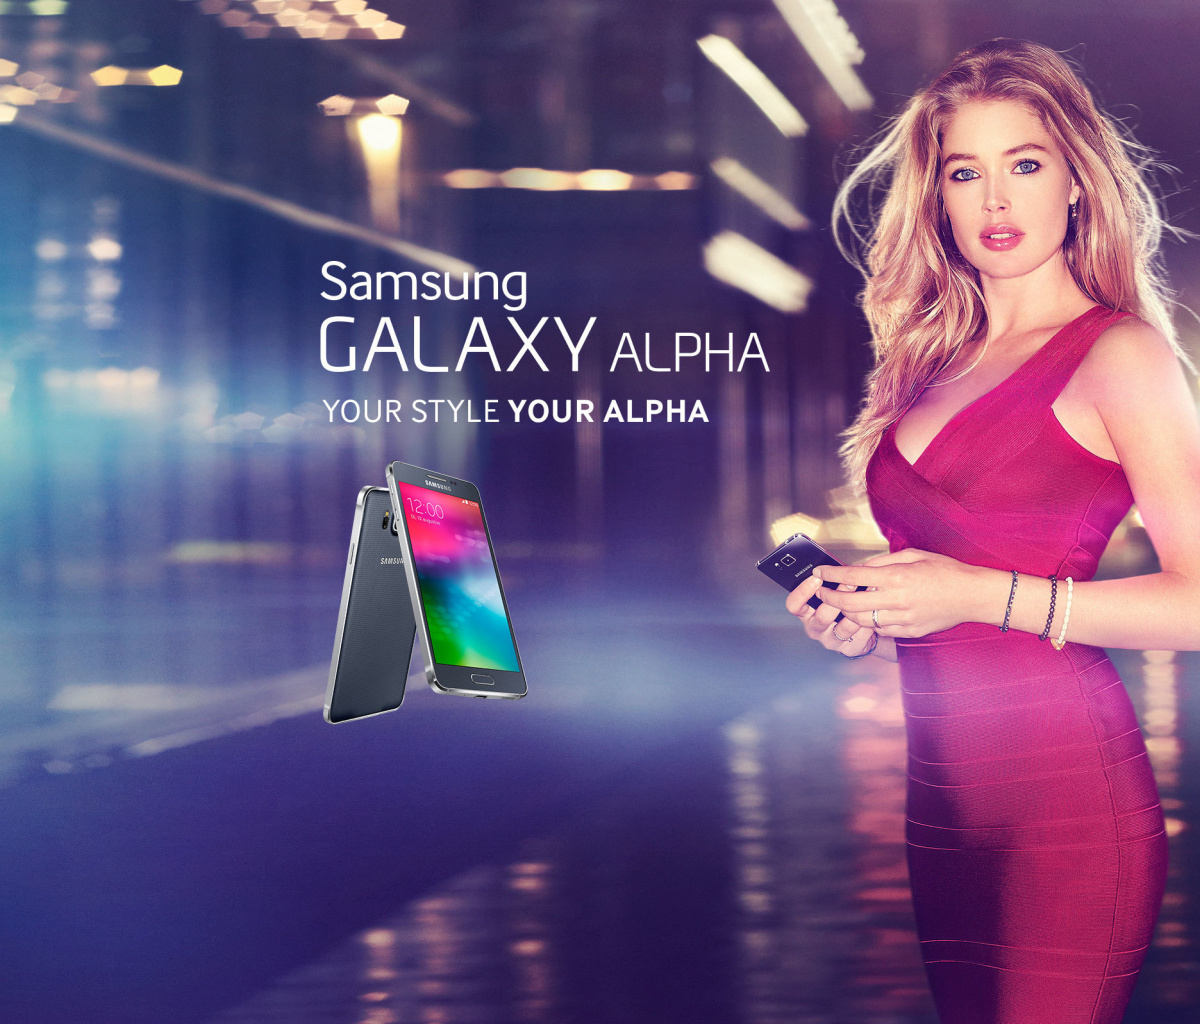 Samsung Galaxy Alpha Advertisement with Doutzen Kroes wallpaper 1200x1024